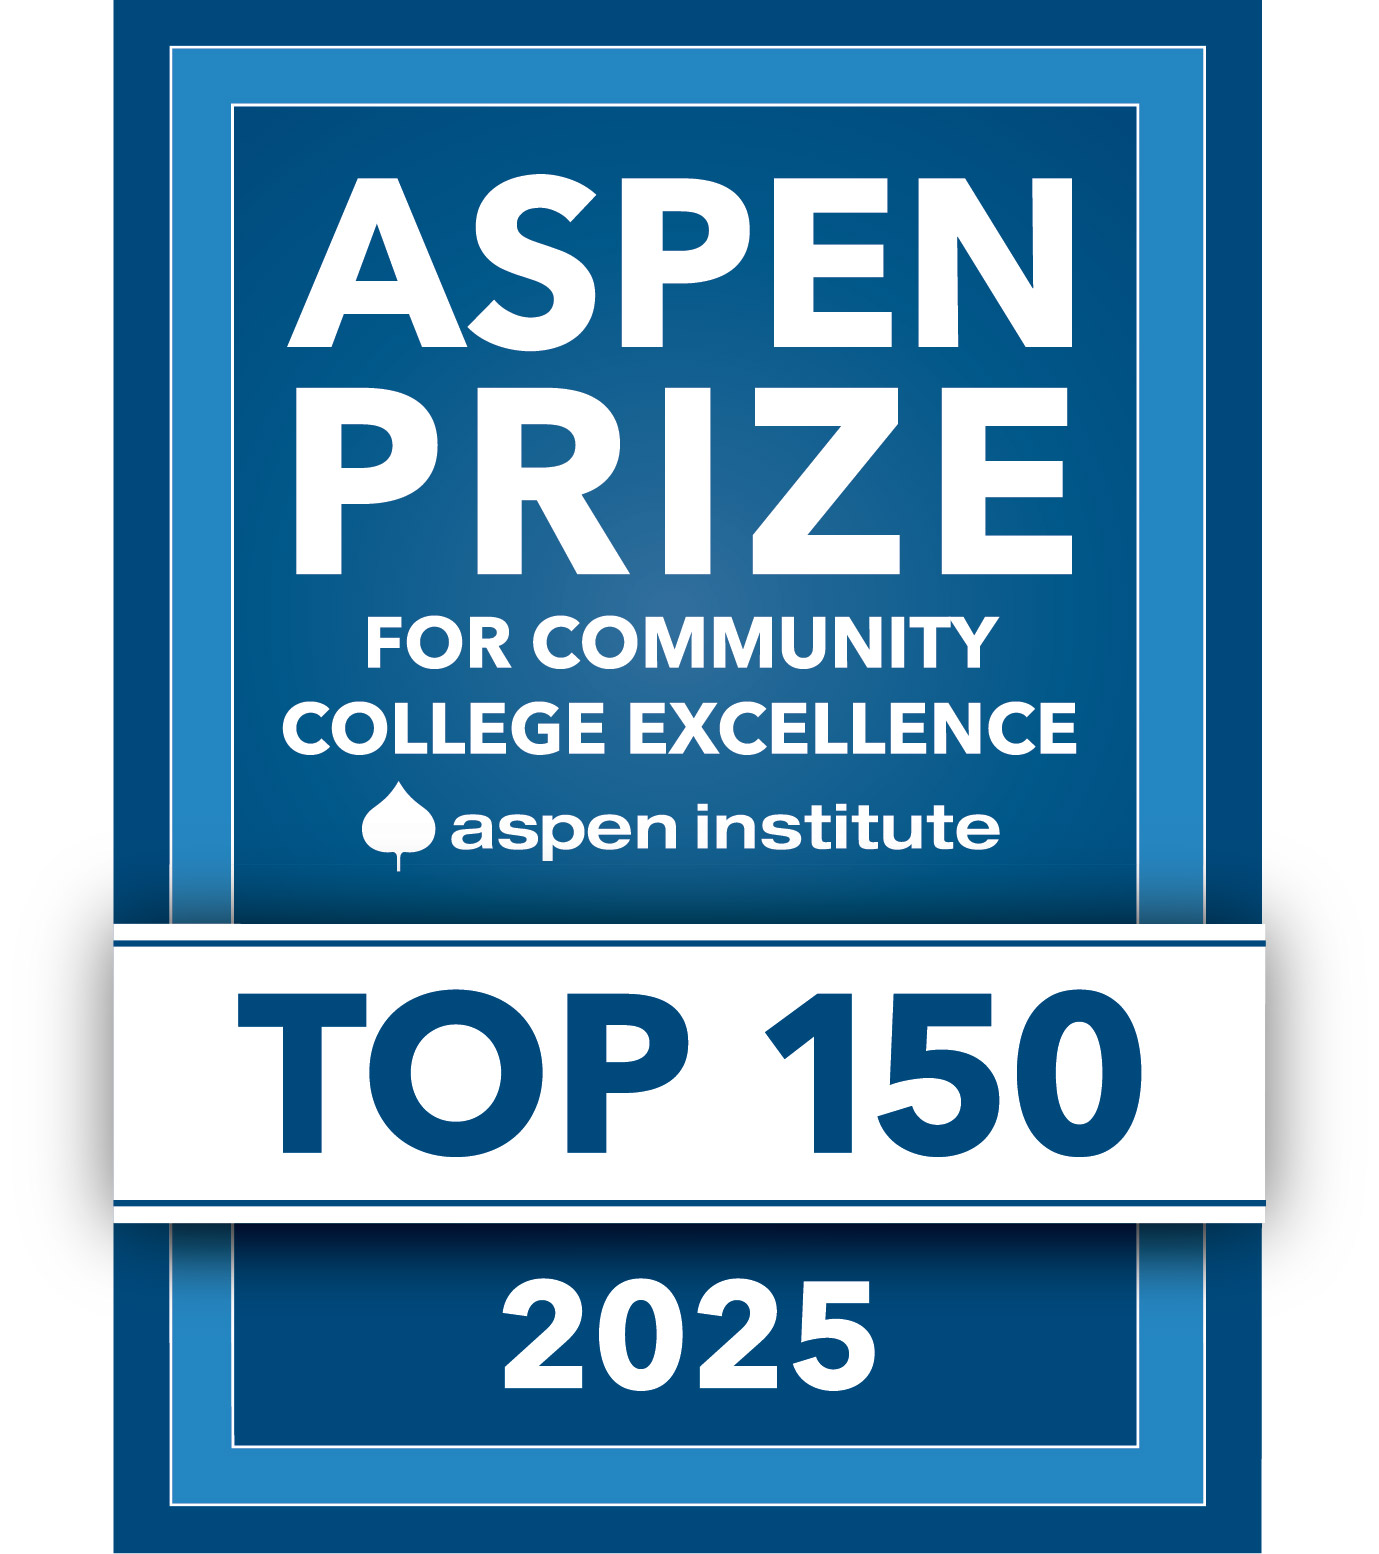 Aspen prize grahpic